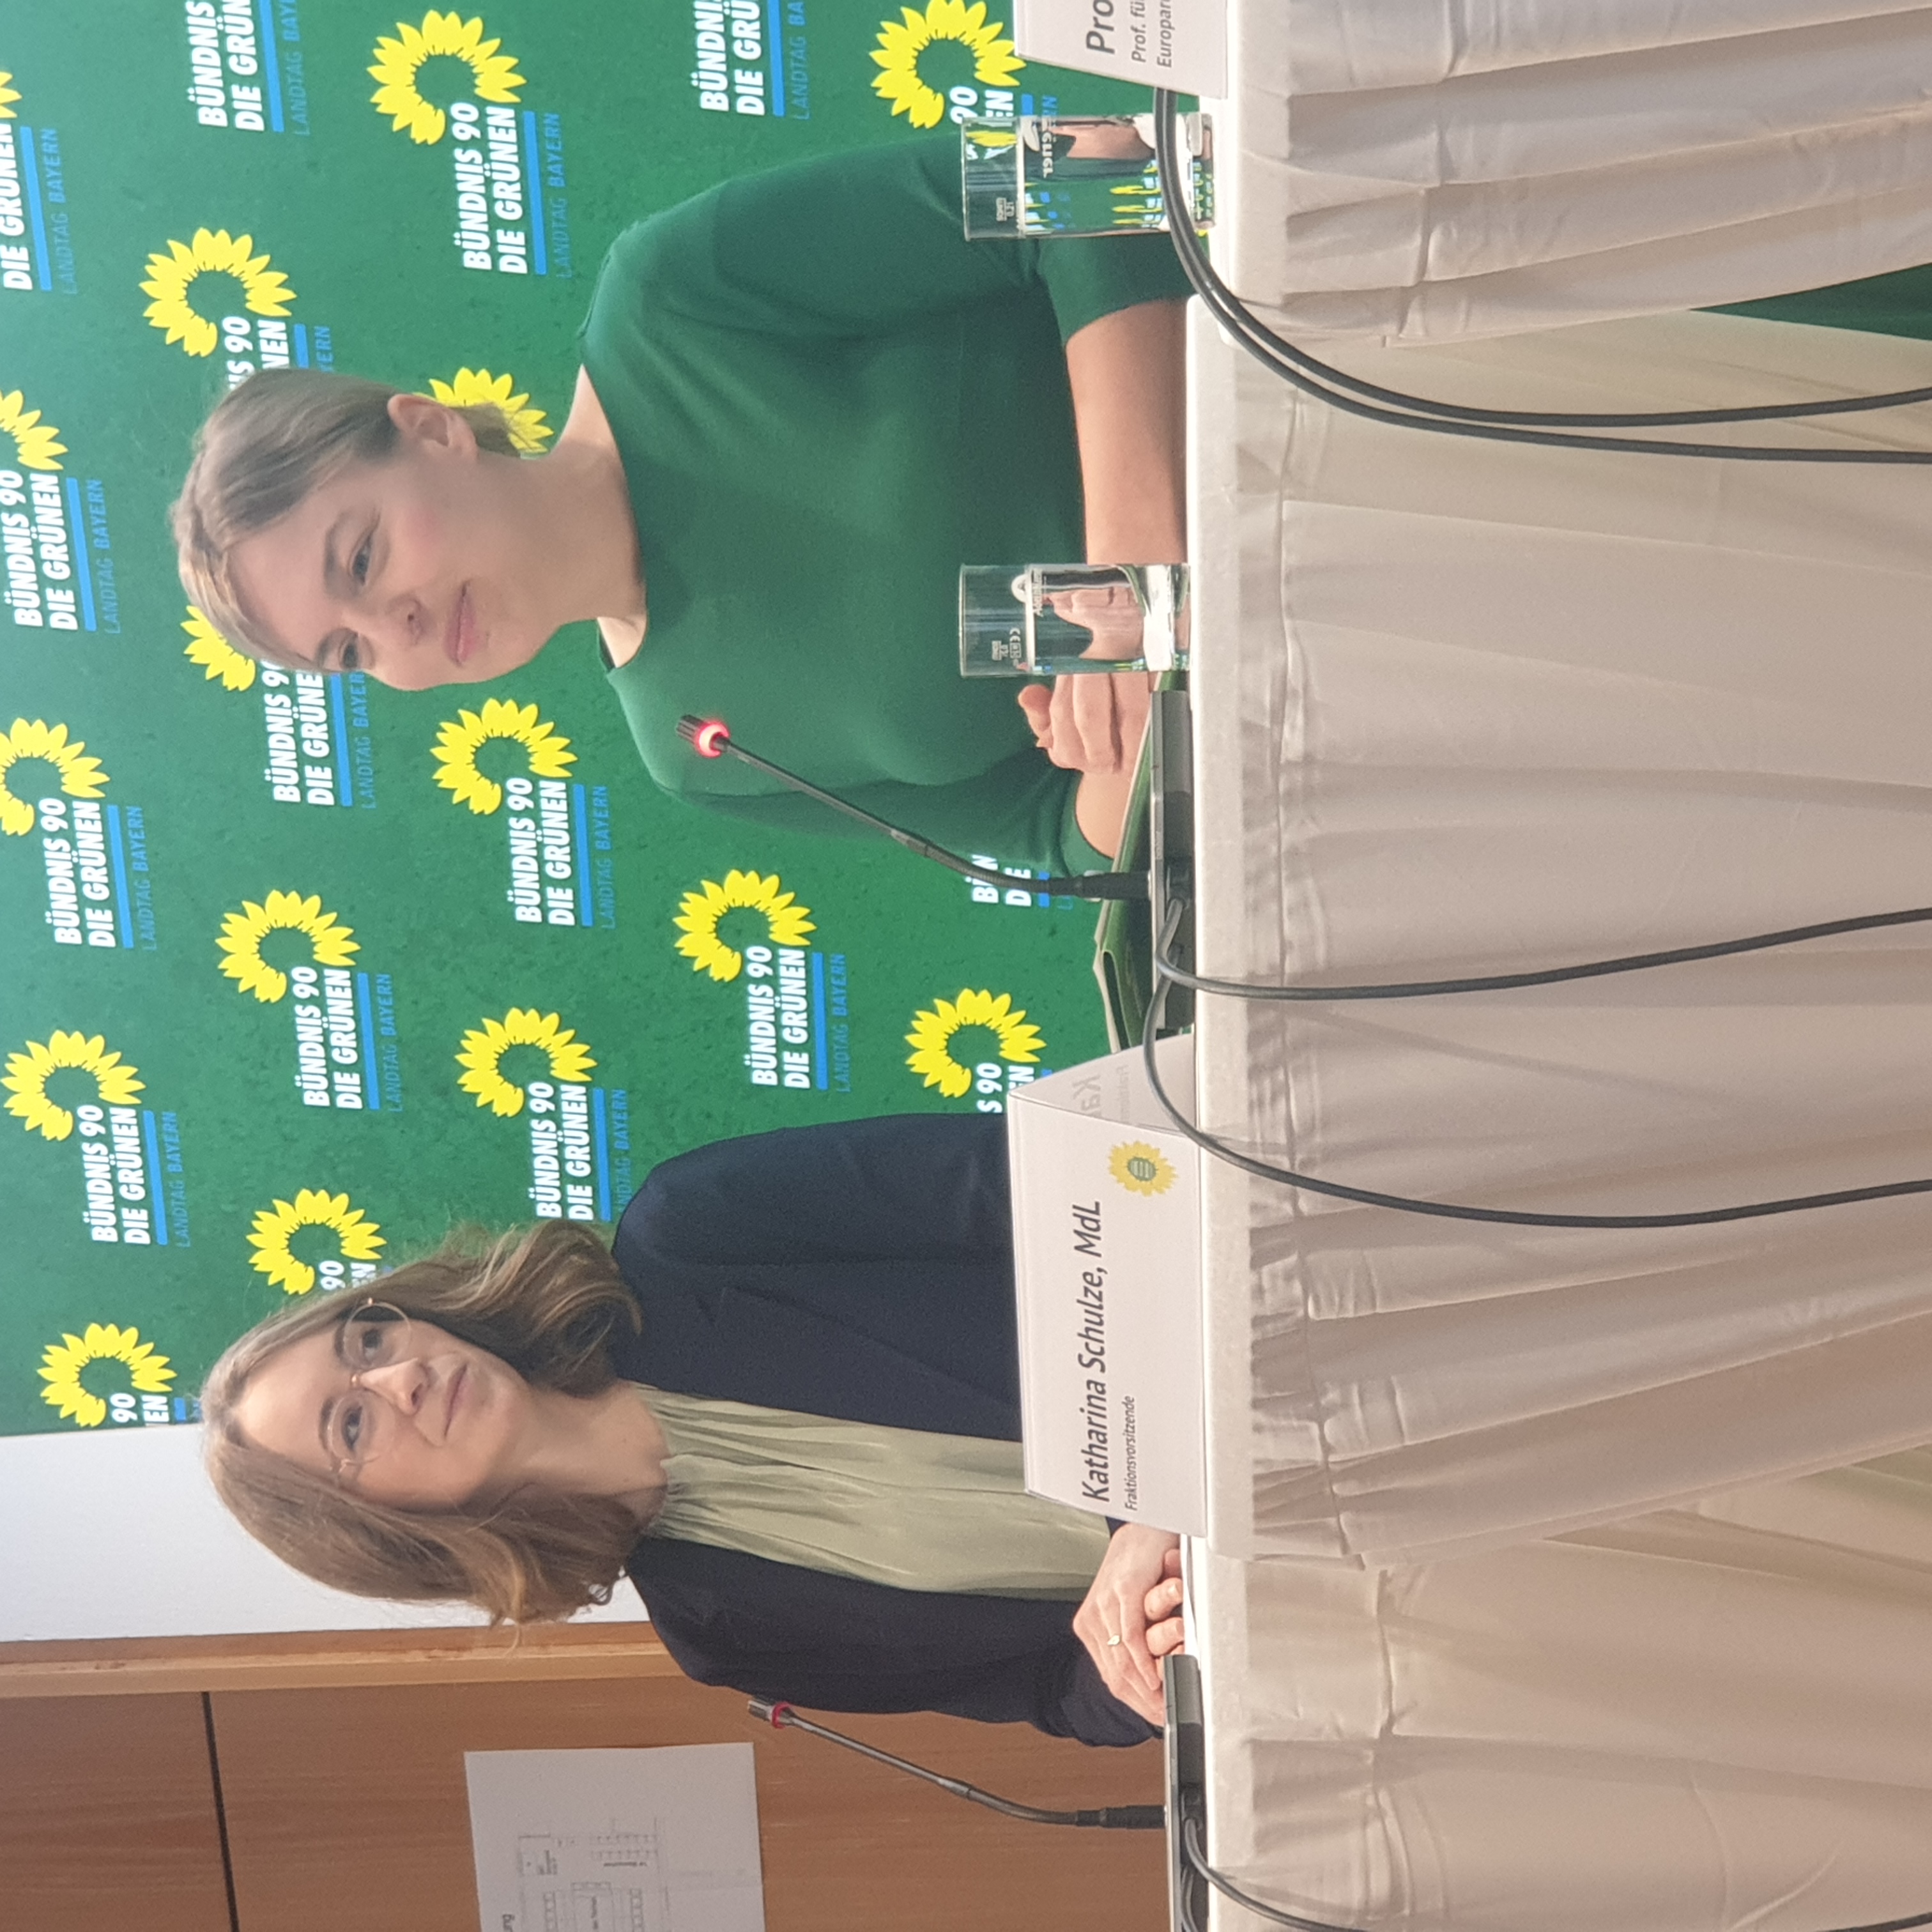 Die Grünen-Politikerinnen Eva Lettenbauer (links) und Katharina Schulze stellten am 17. Februar den Gesetzentwurf ihrer Fraktion "Die Hälfte der Macht den Frauen" vor